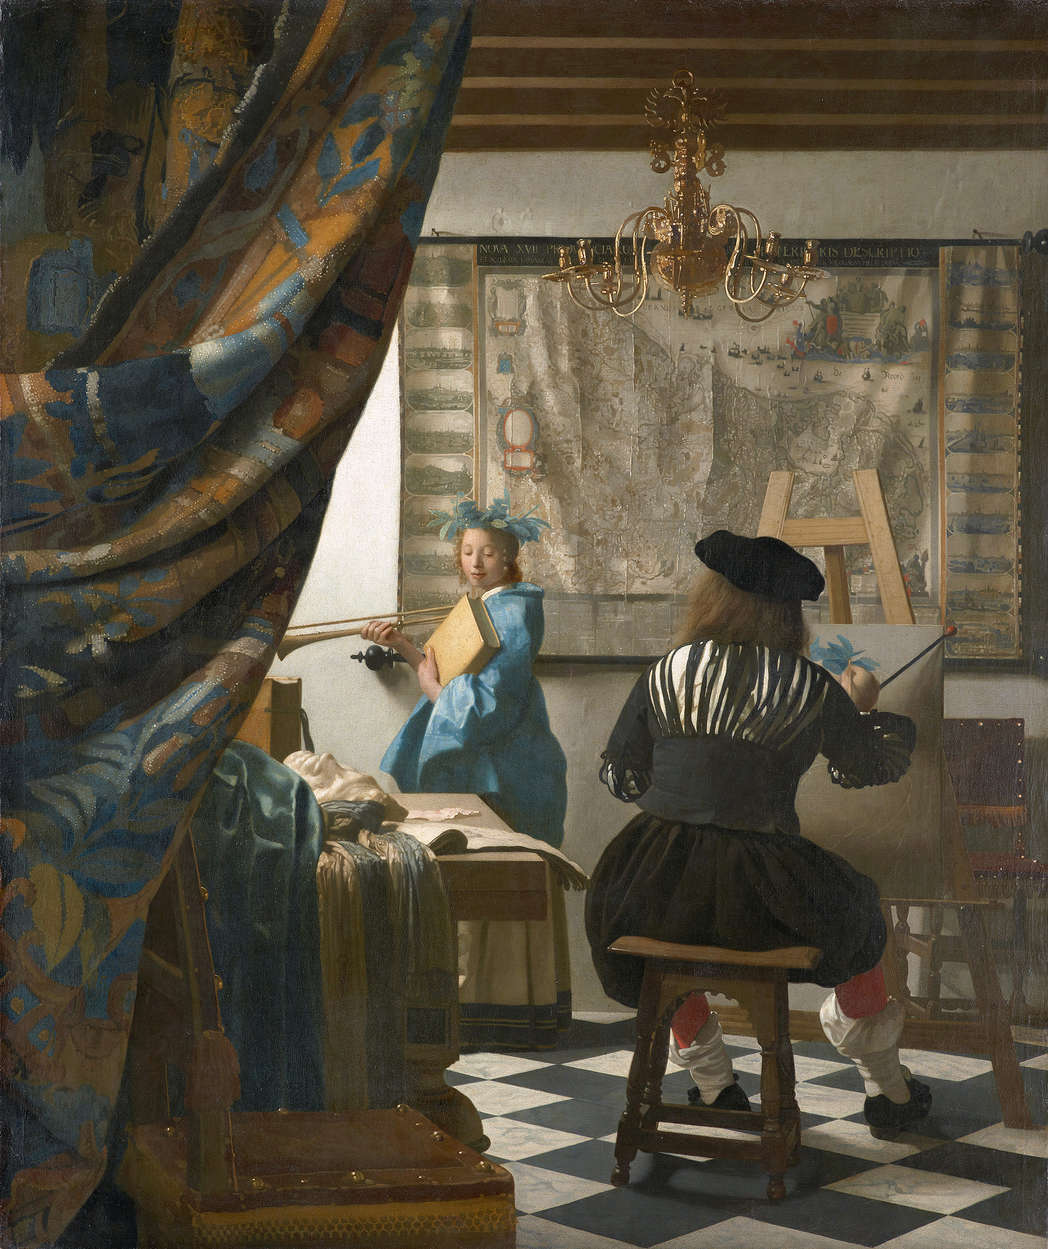             Fotomurali "Vermeer nel suo studio" di Jan Vermeer
        